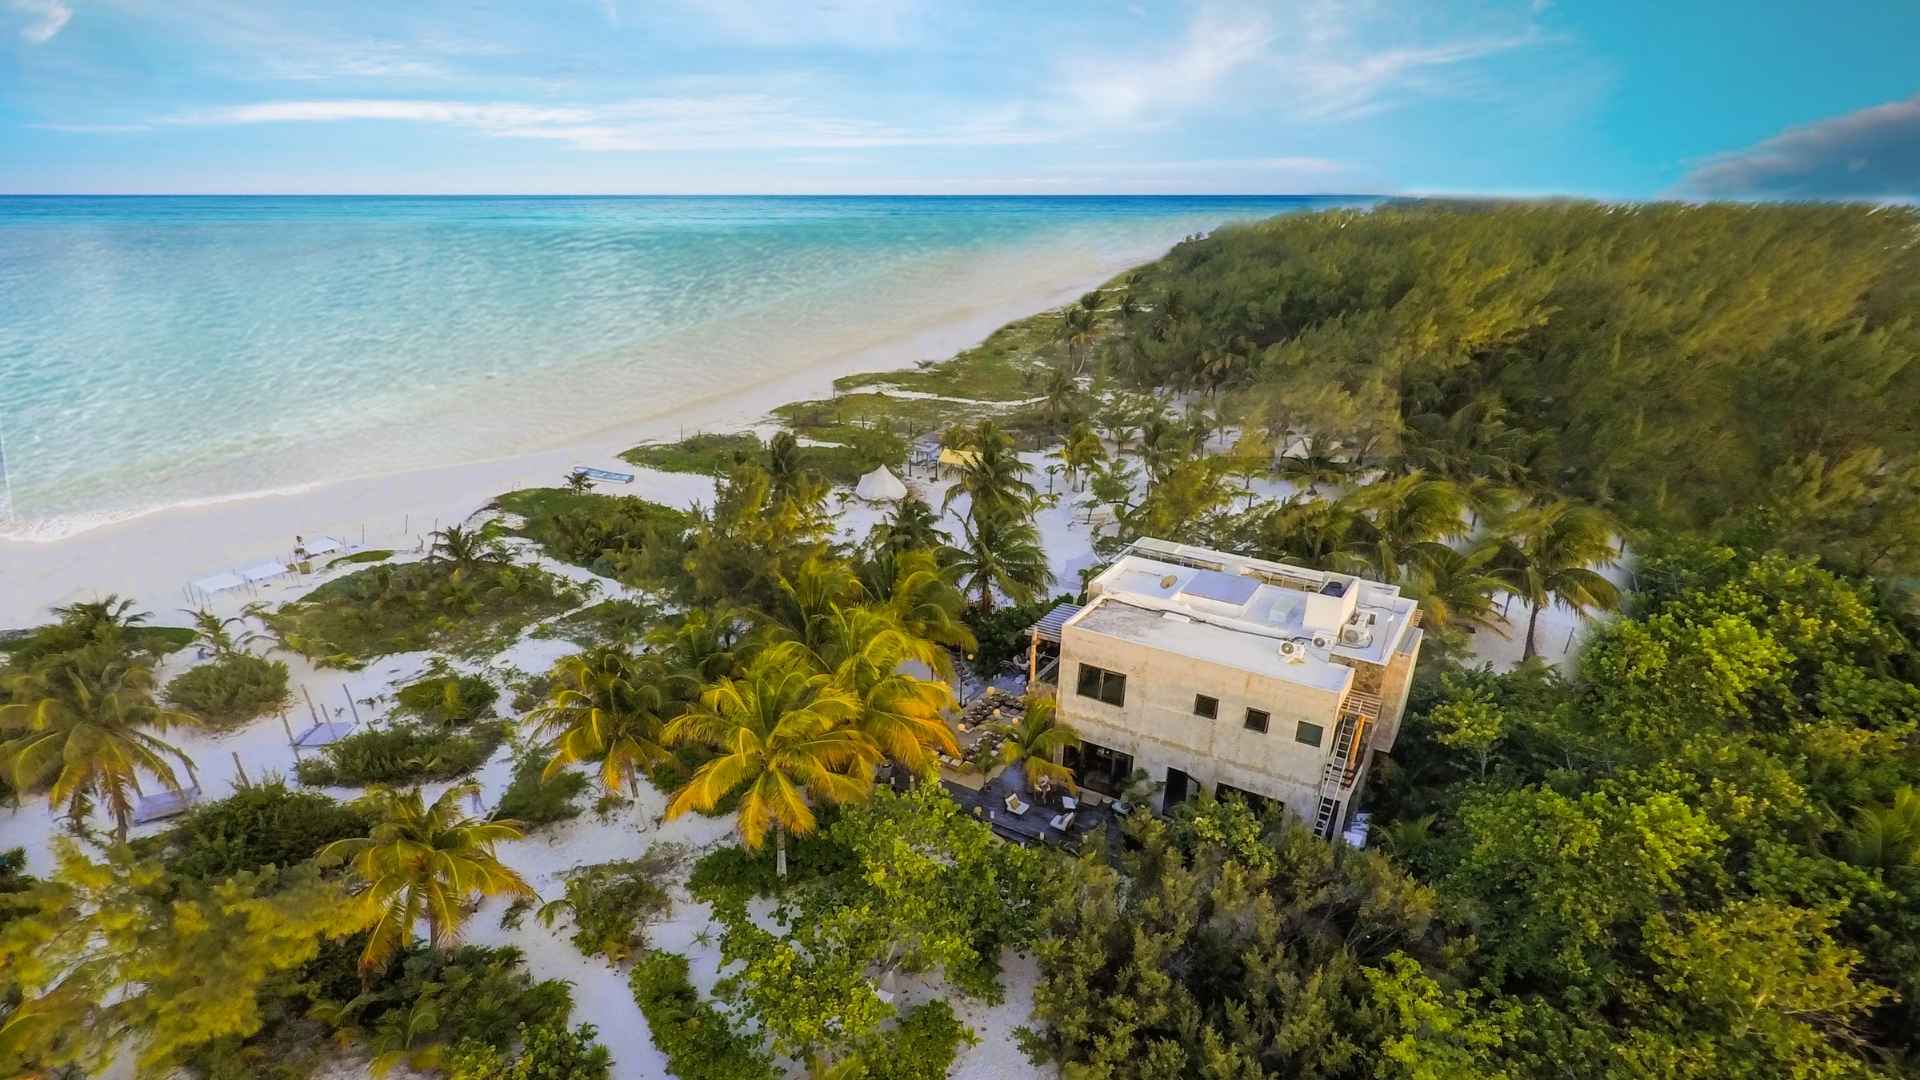 Casa Maya Kaan - Riviera Maya